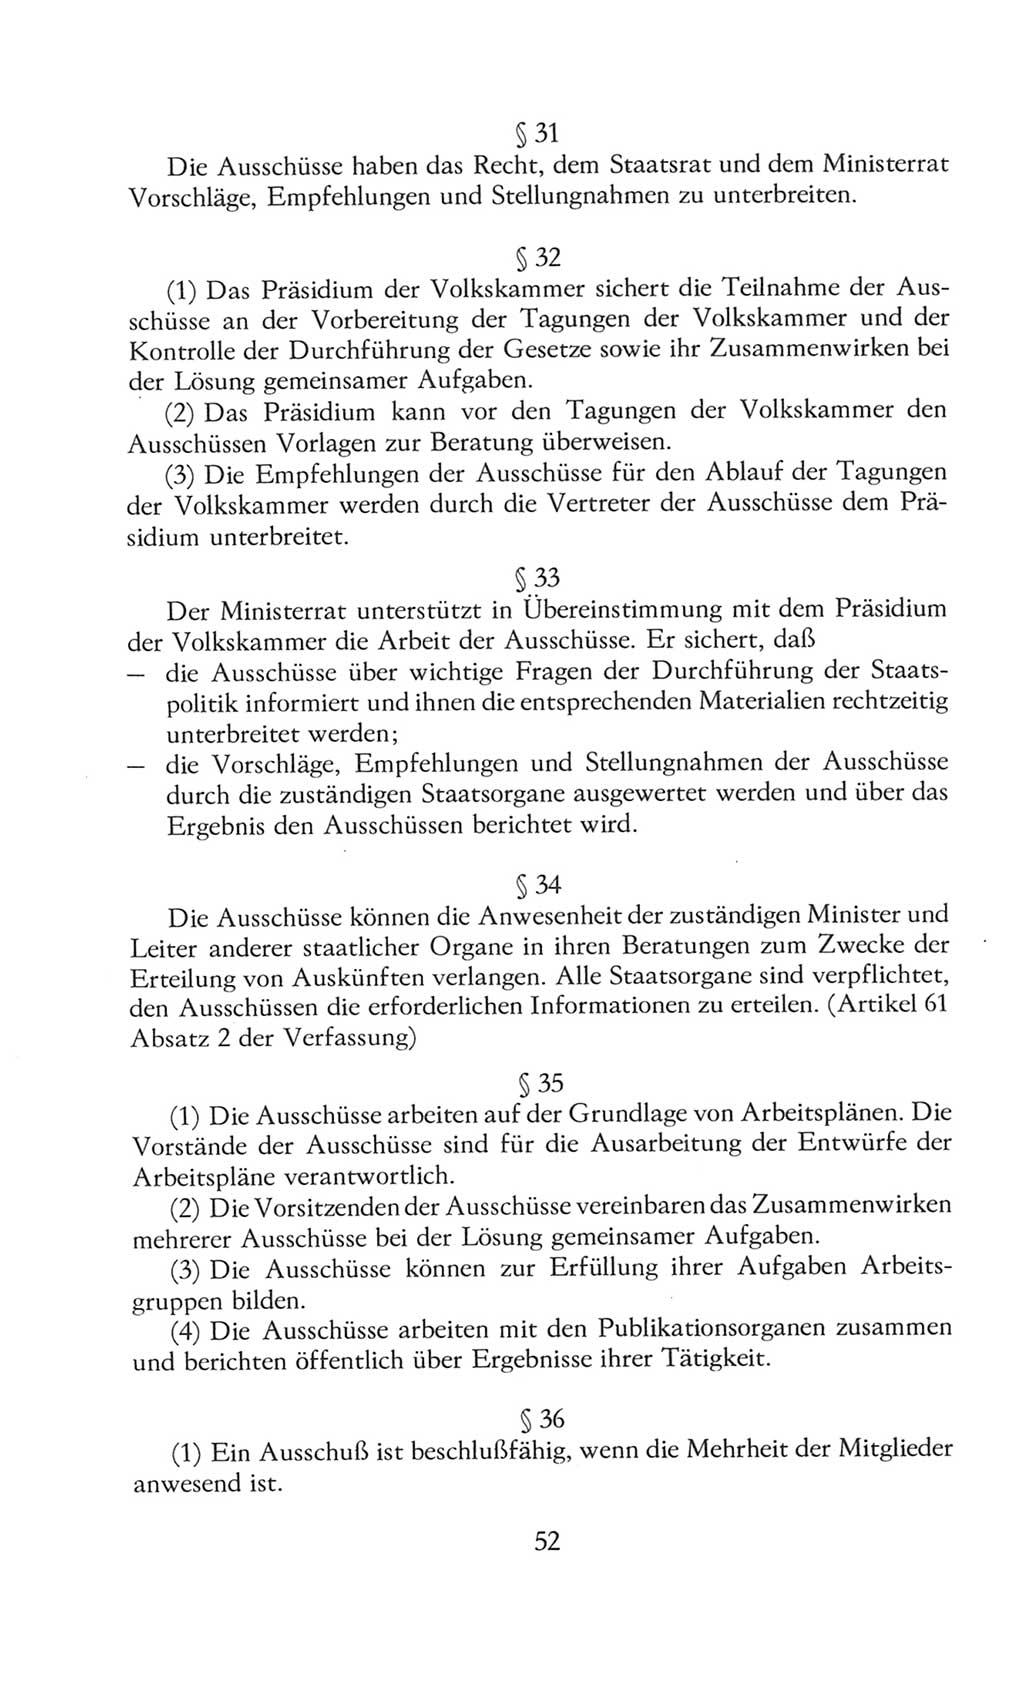 Volkskammer (VK) der Deutschen Demokratischen Republik (DDR), 8. Wahlperiode 1981-1986, Seite 52 (VK. DDR 8. WP. 1981-1986, S. 52)